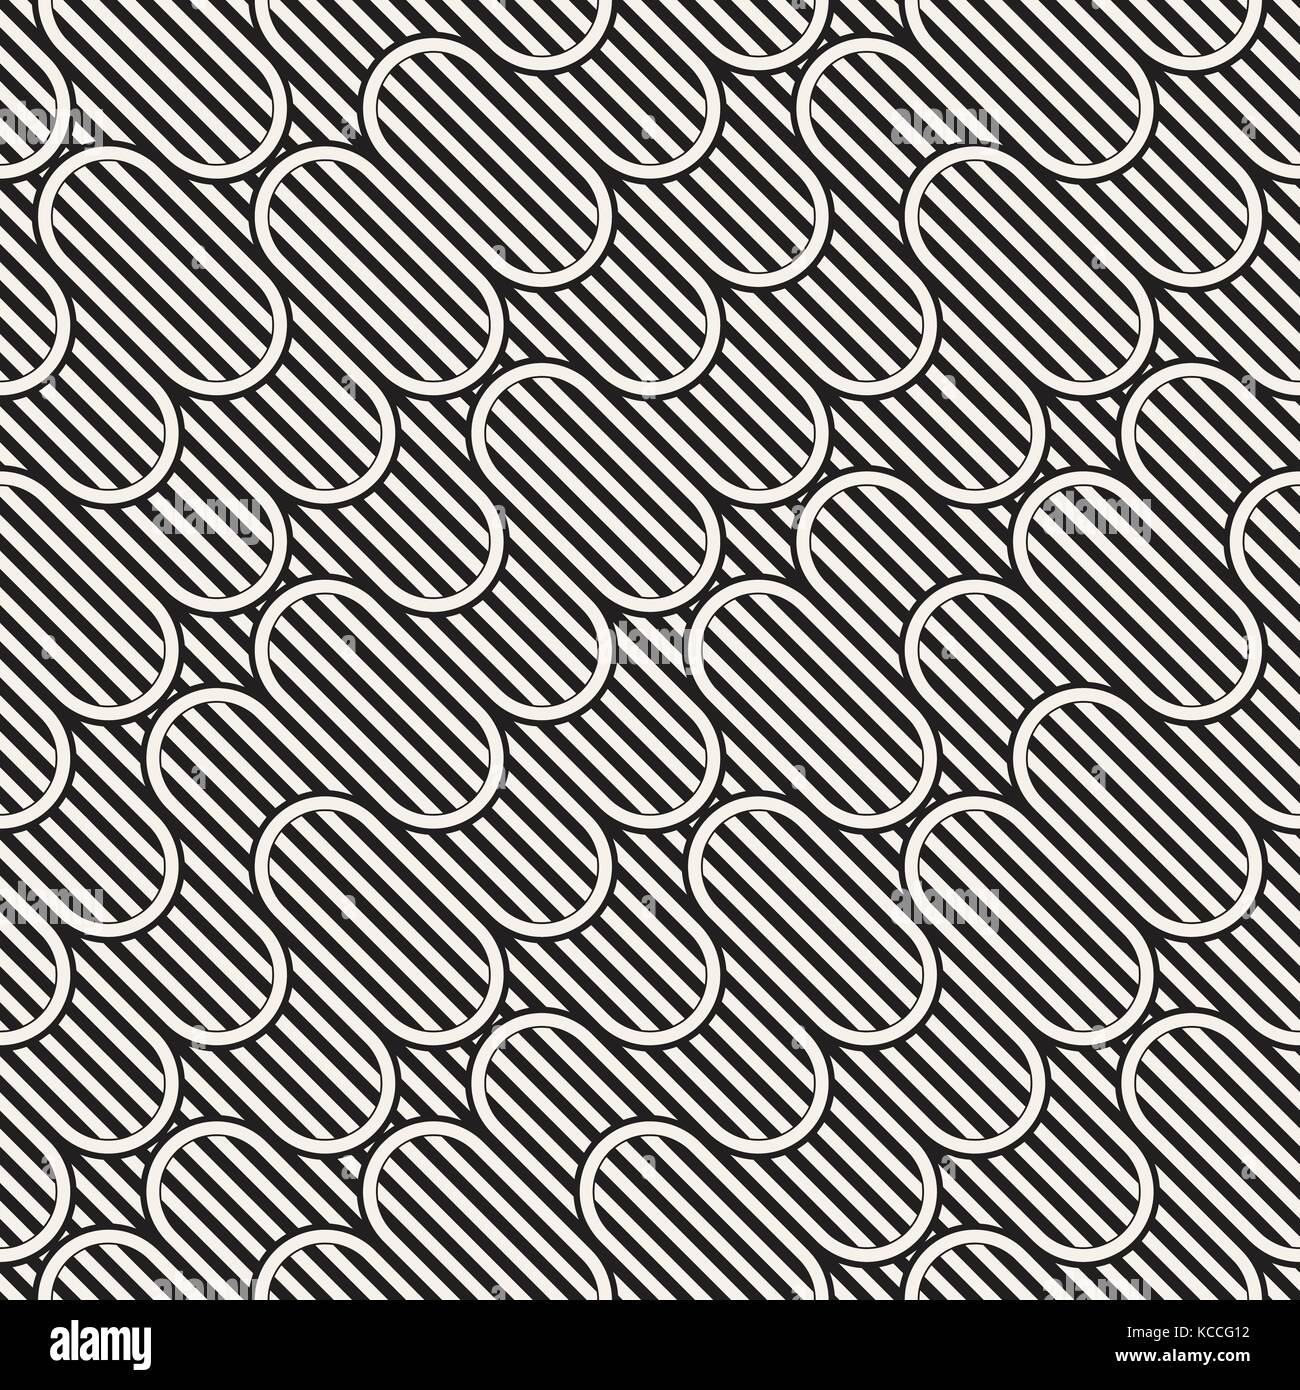 Monochrome transparente motif ondulant. abstract background rayures rayures irrégulières. vecteur conception ronde. Illustration de Vecteur